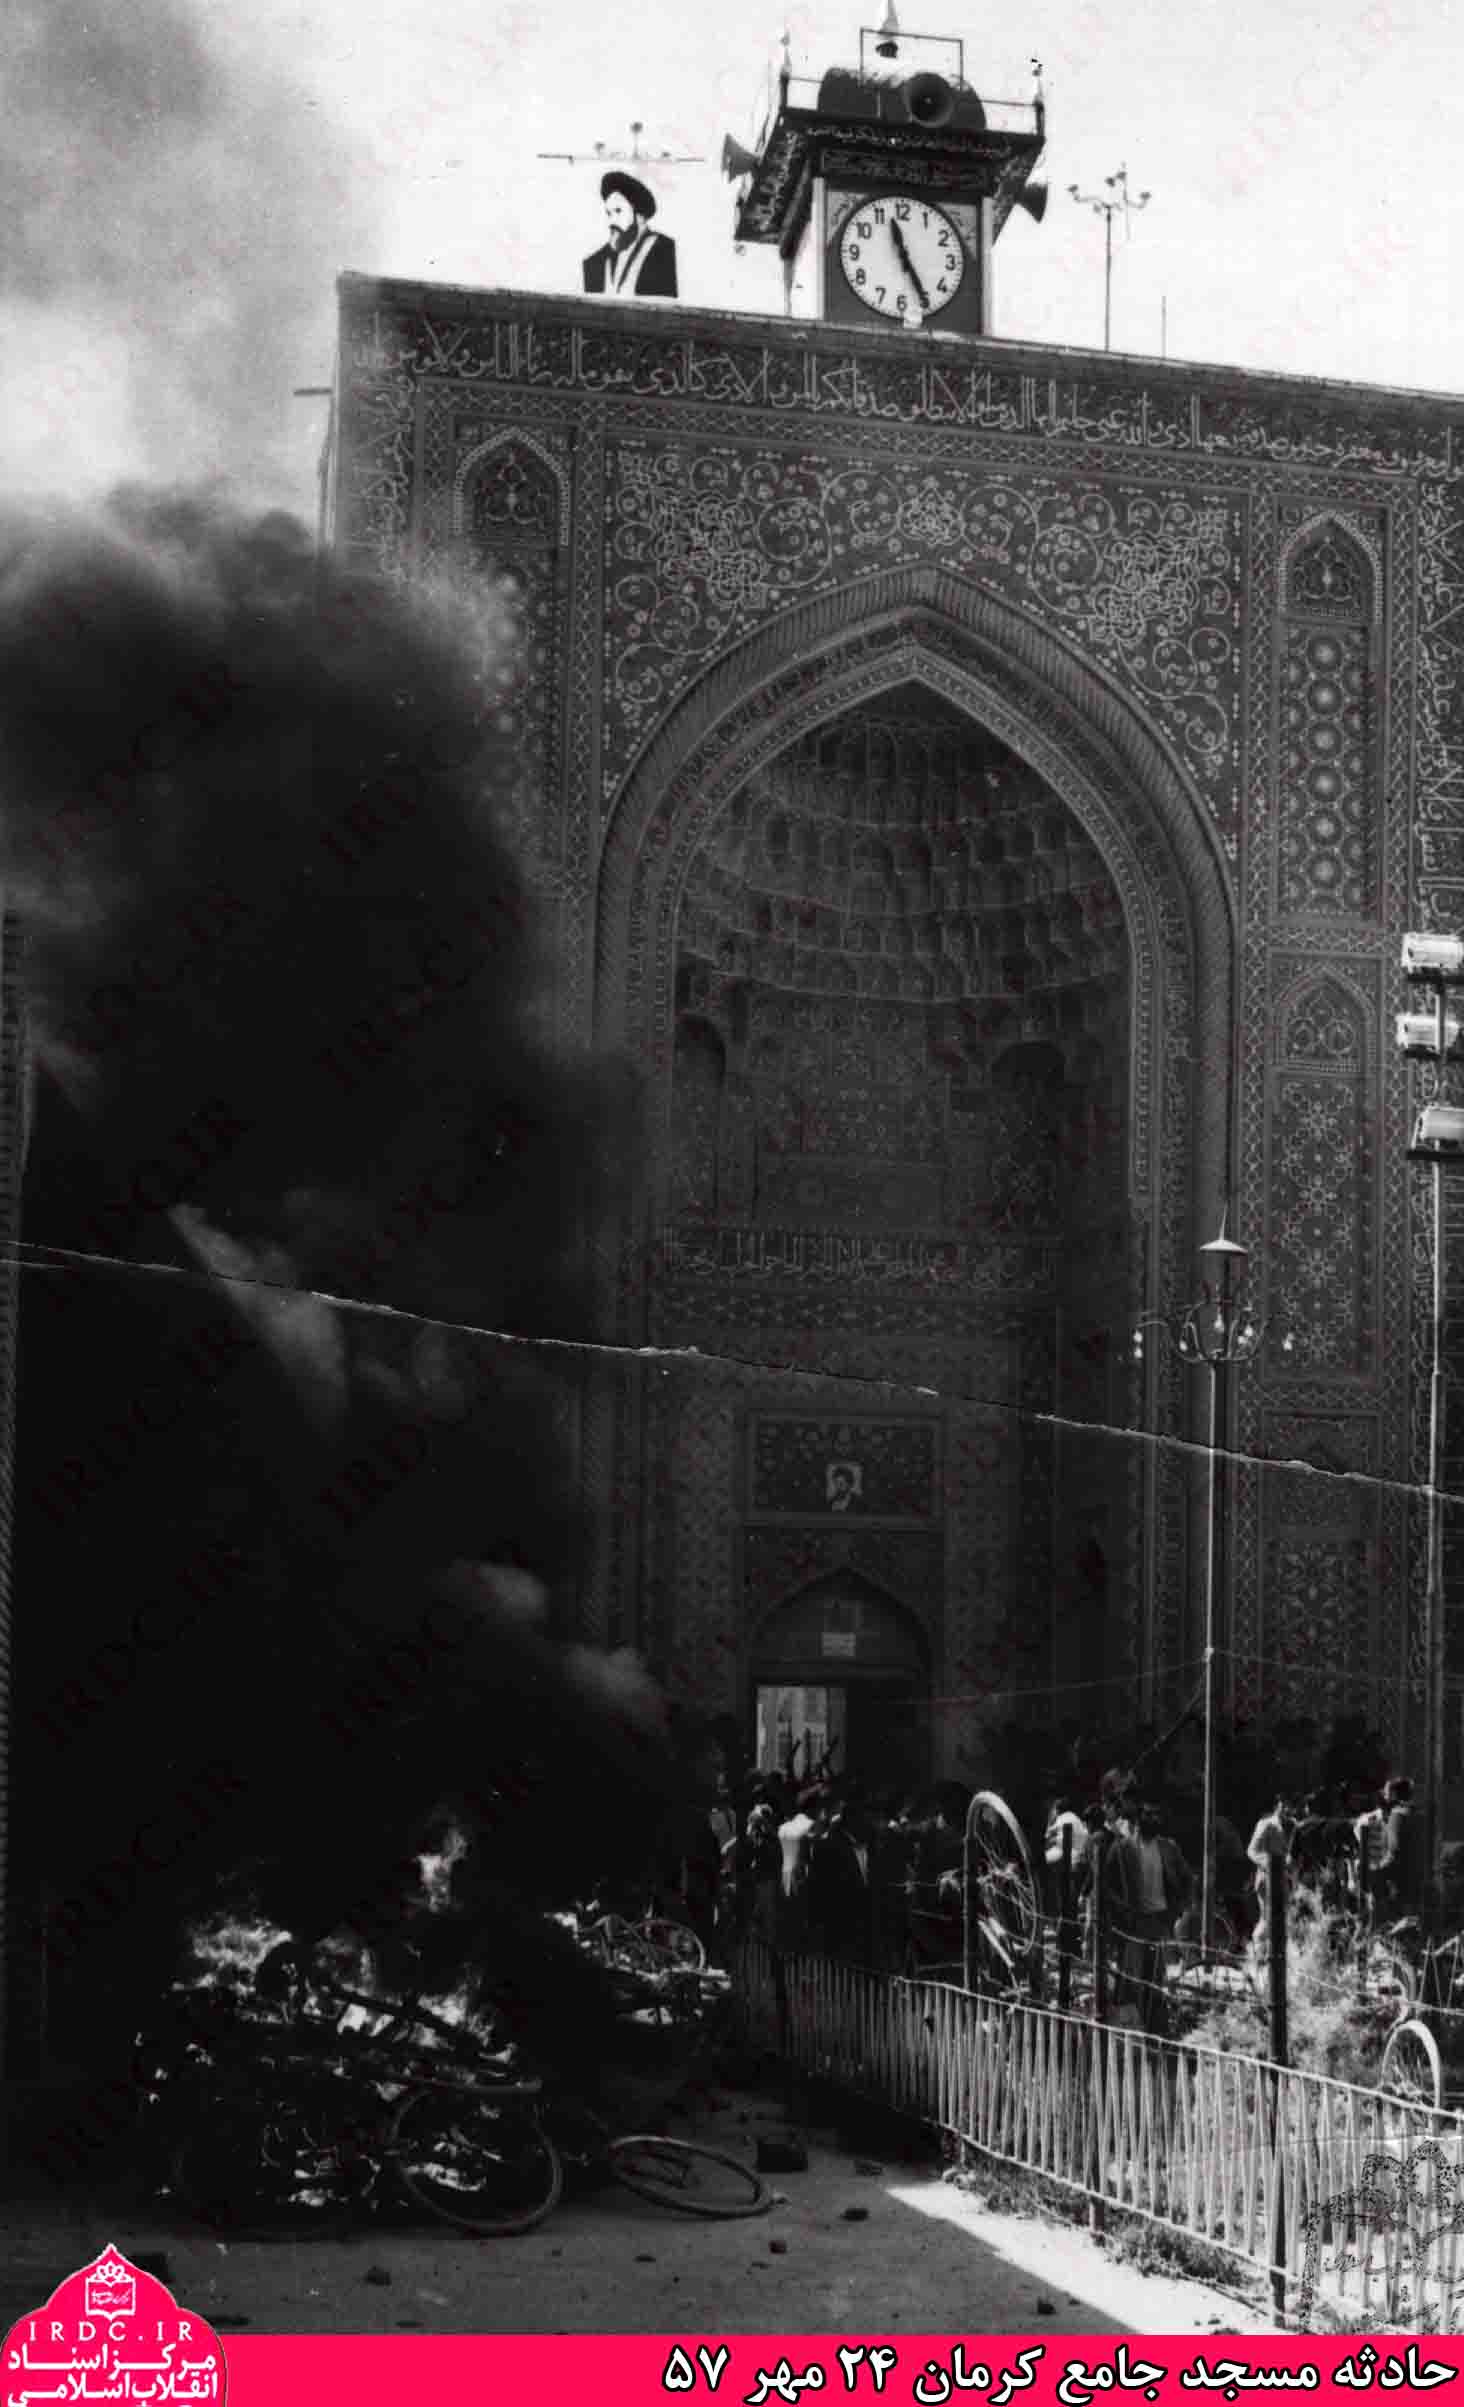 تصاویر کمتر دیده شده از حادثه مسجد جامع کرمان در 24 مهر 1357